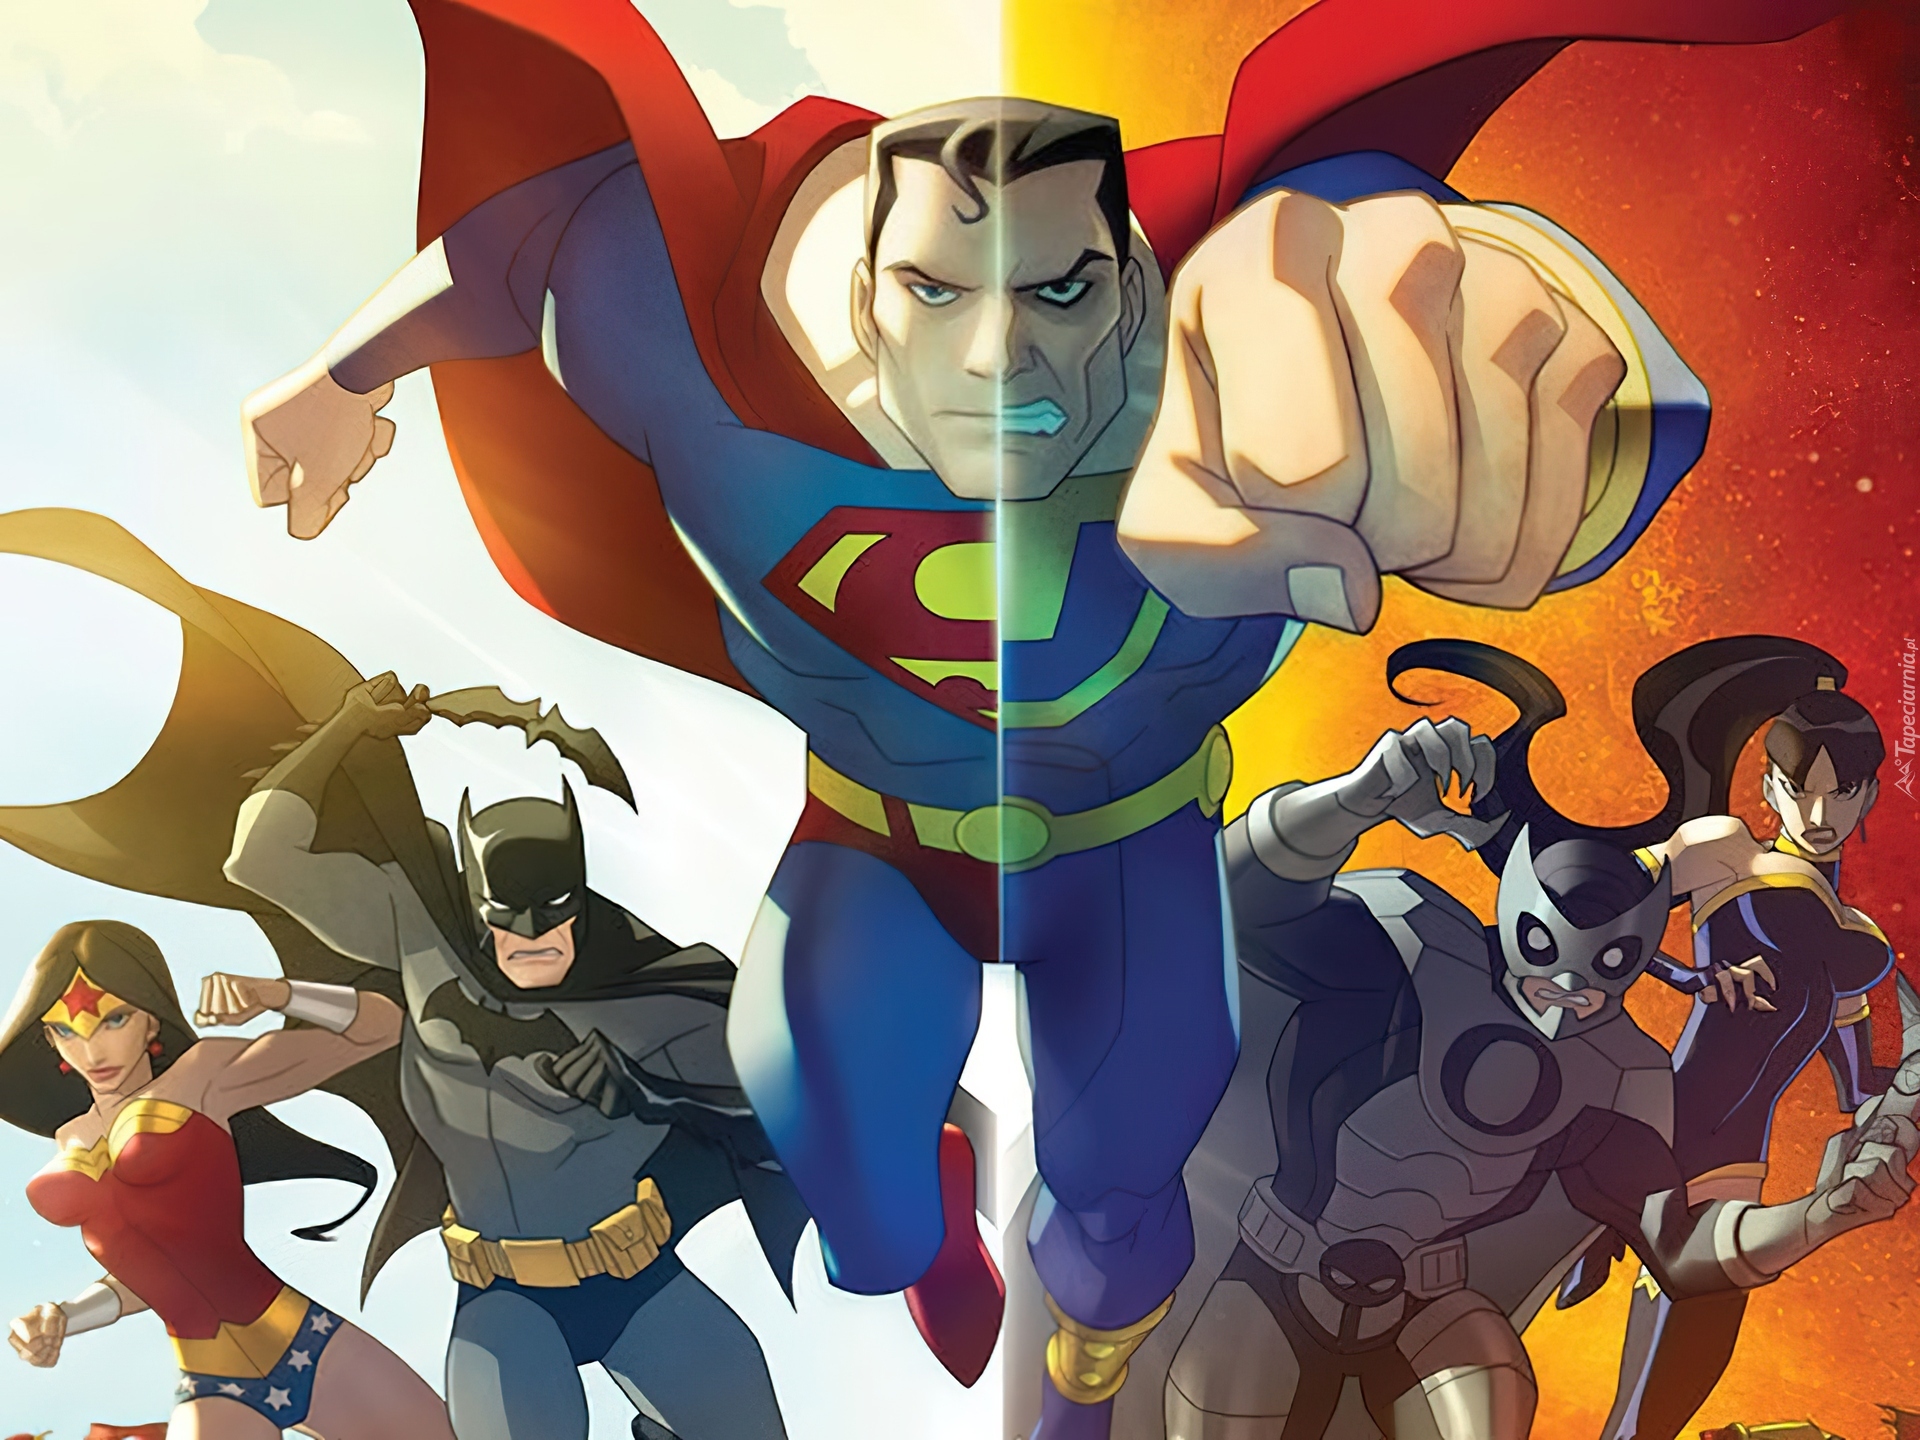 Bohaterowie, Dobro, Zło, Serial animowany, Liga Sprawiedliwych Kryzys na dwóch Ziemiach, Justice League Crisis on Two Earths